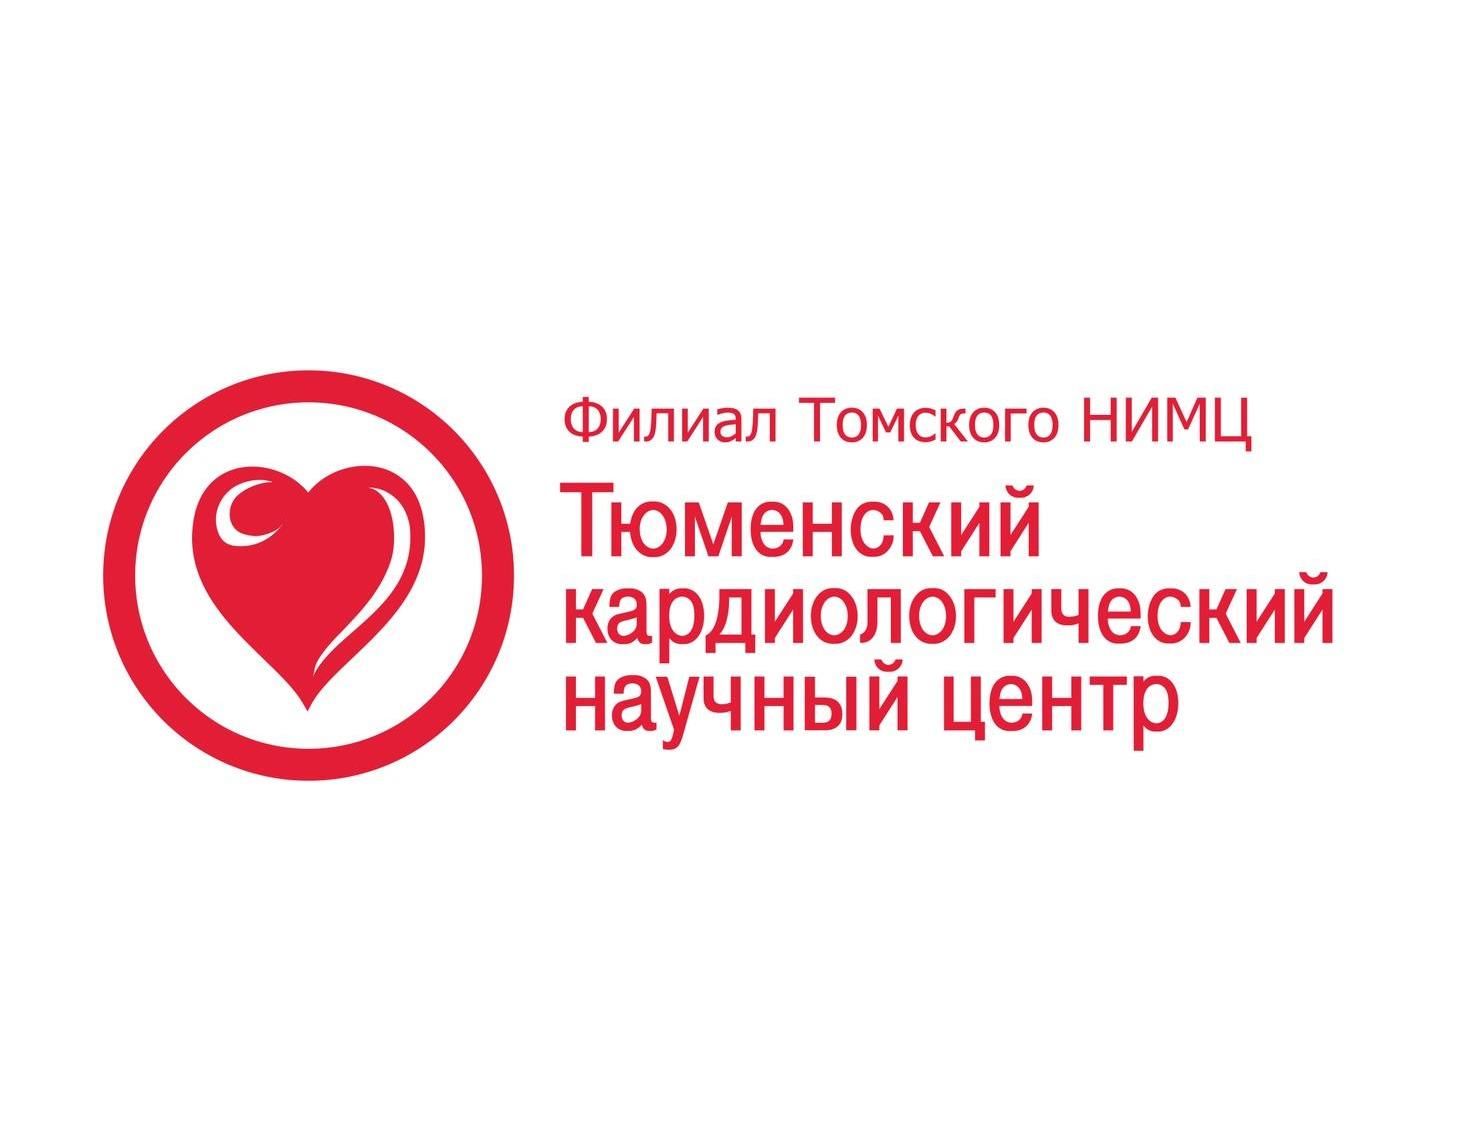 I Евразийский конгресс кардиологов совместно с III Национальным конгрессом кардиологов Казахстана